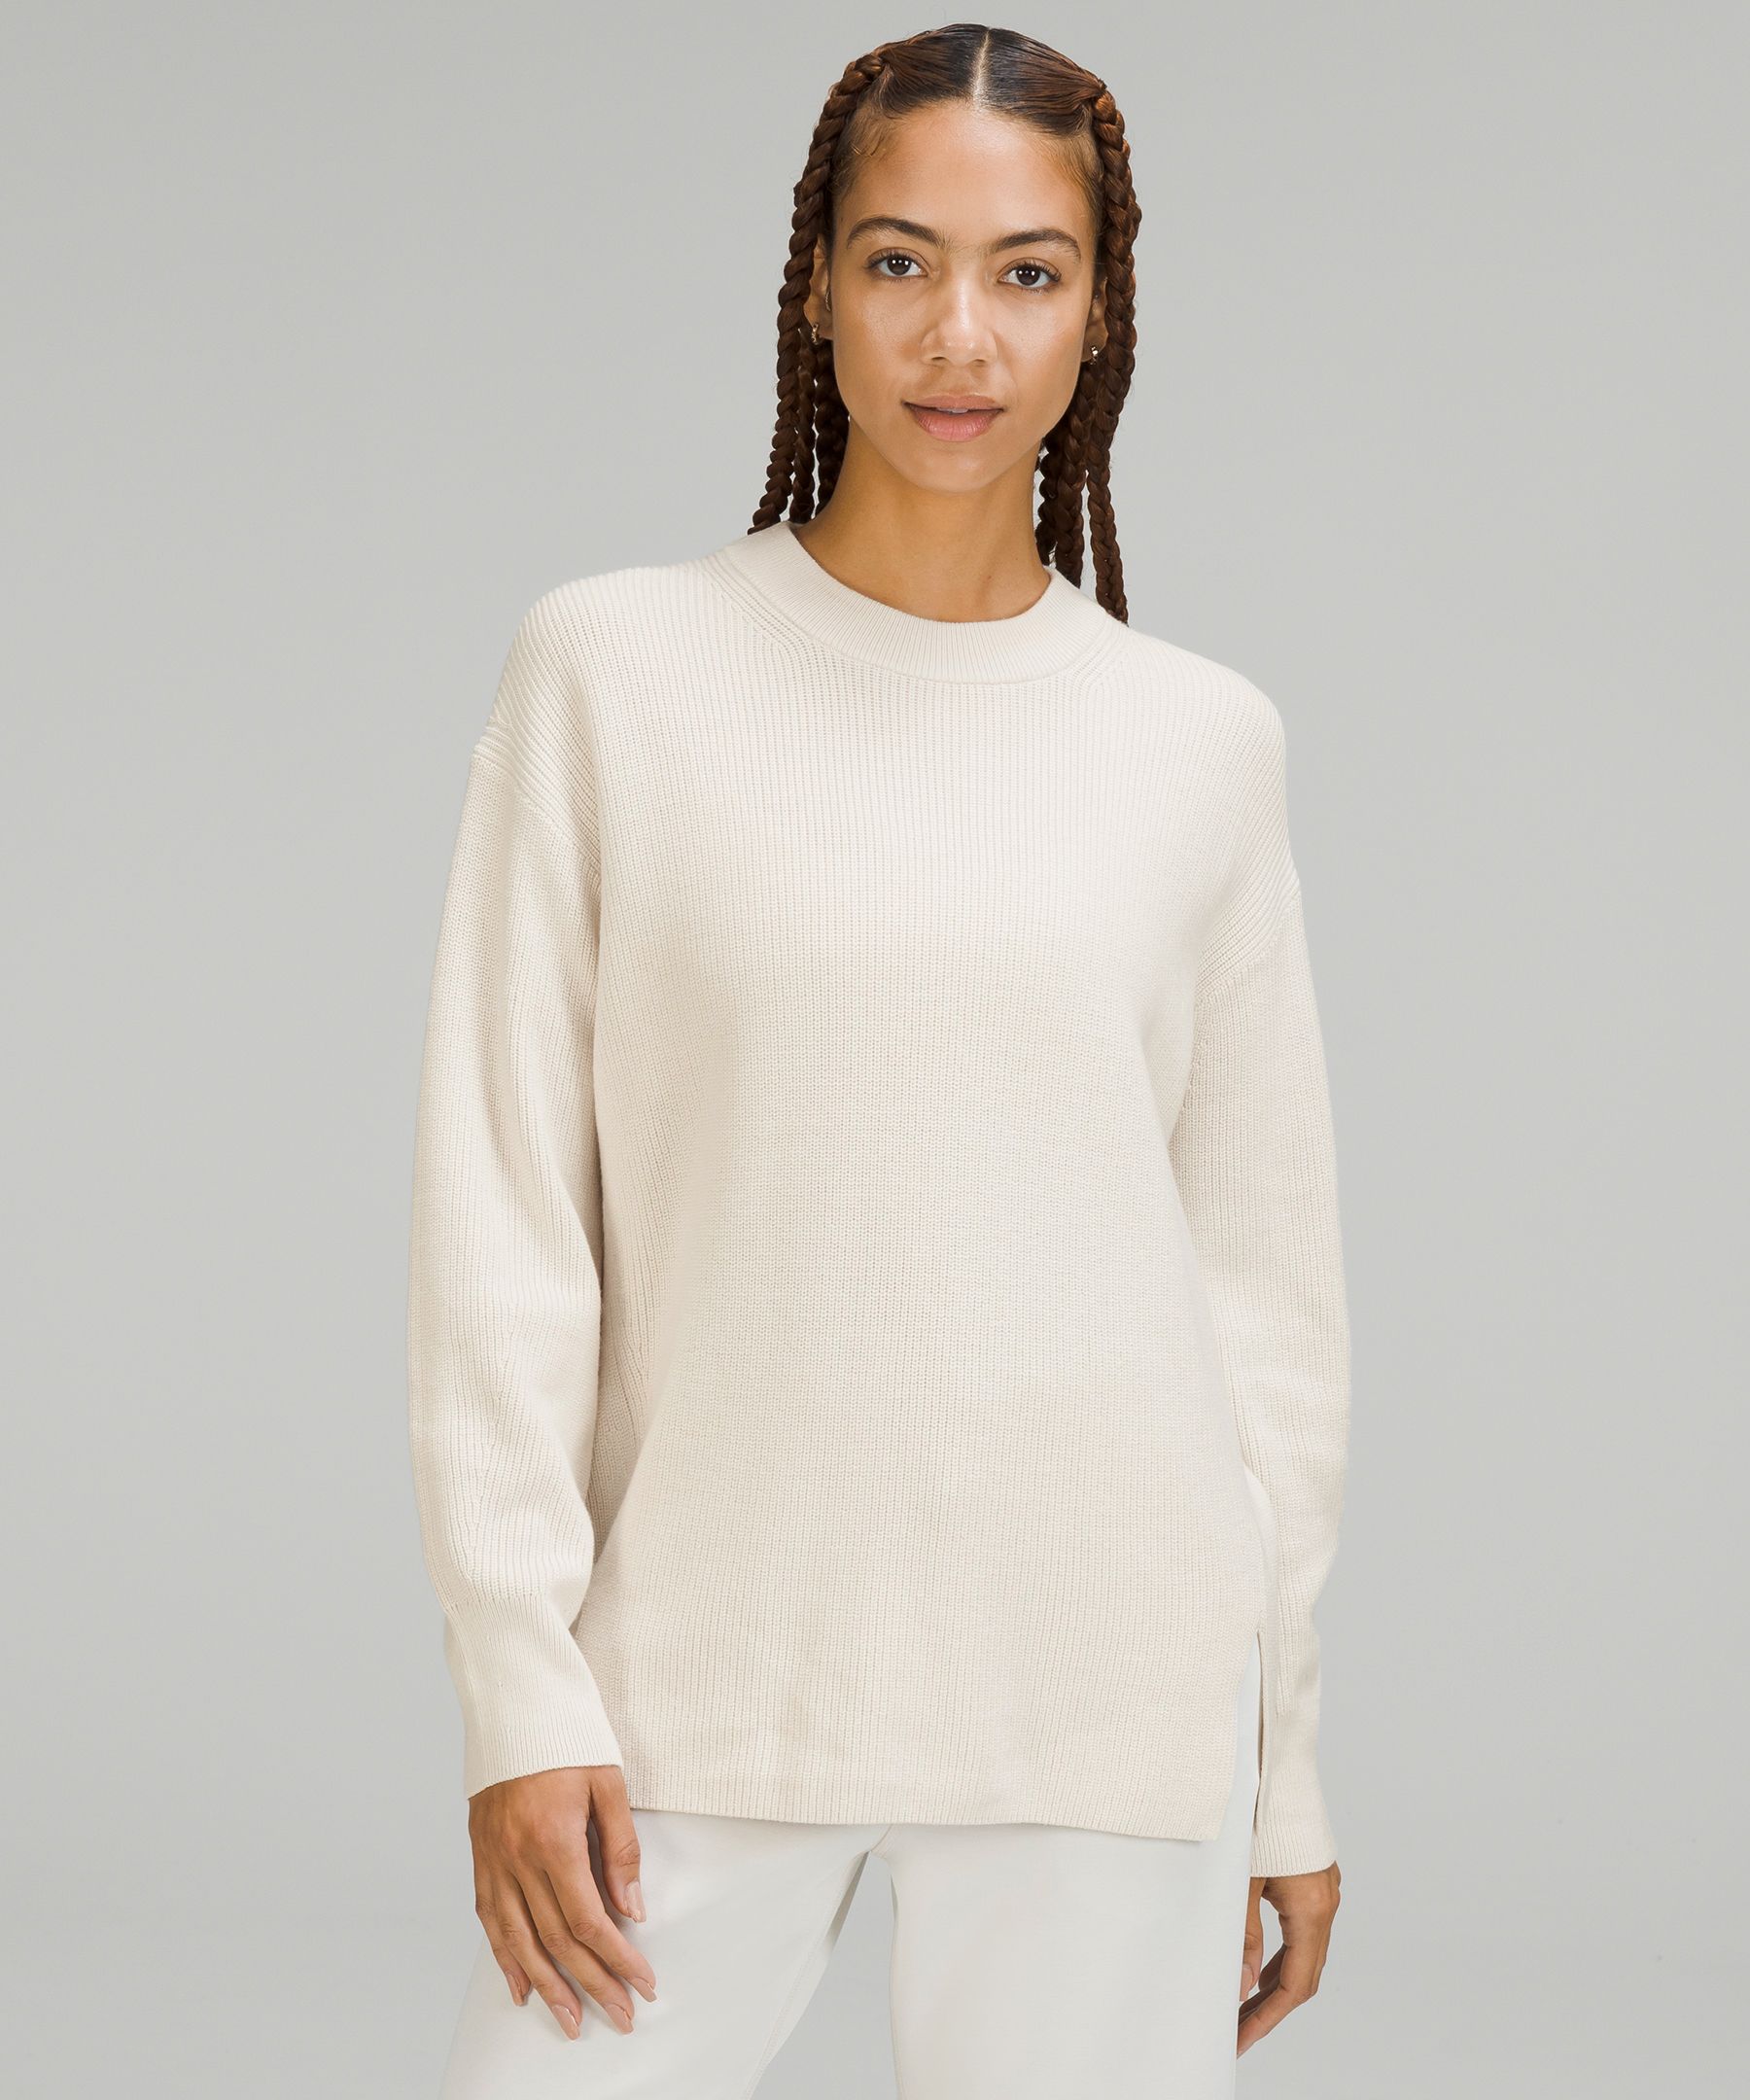 Lululemon Seva Merino Wool Knit Sweater High Low Grey Women's Size 4 READ